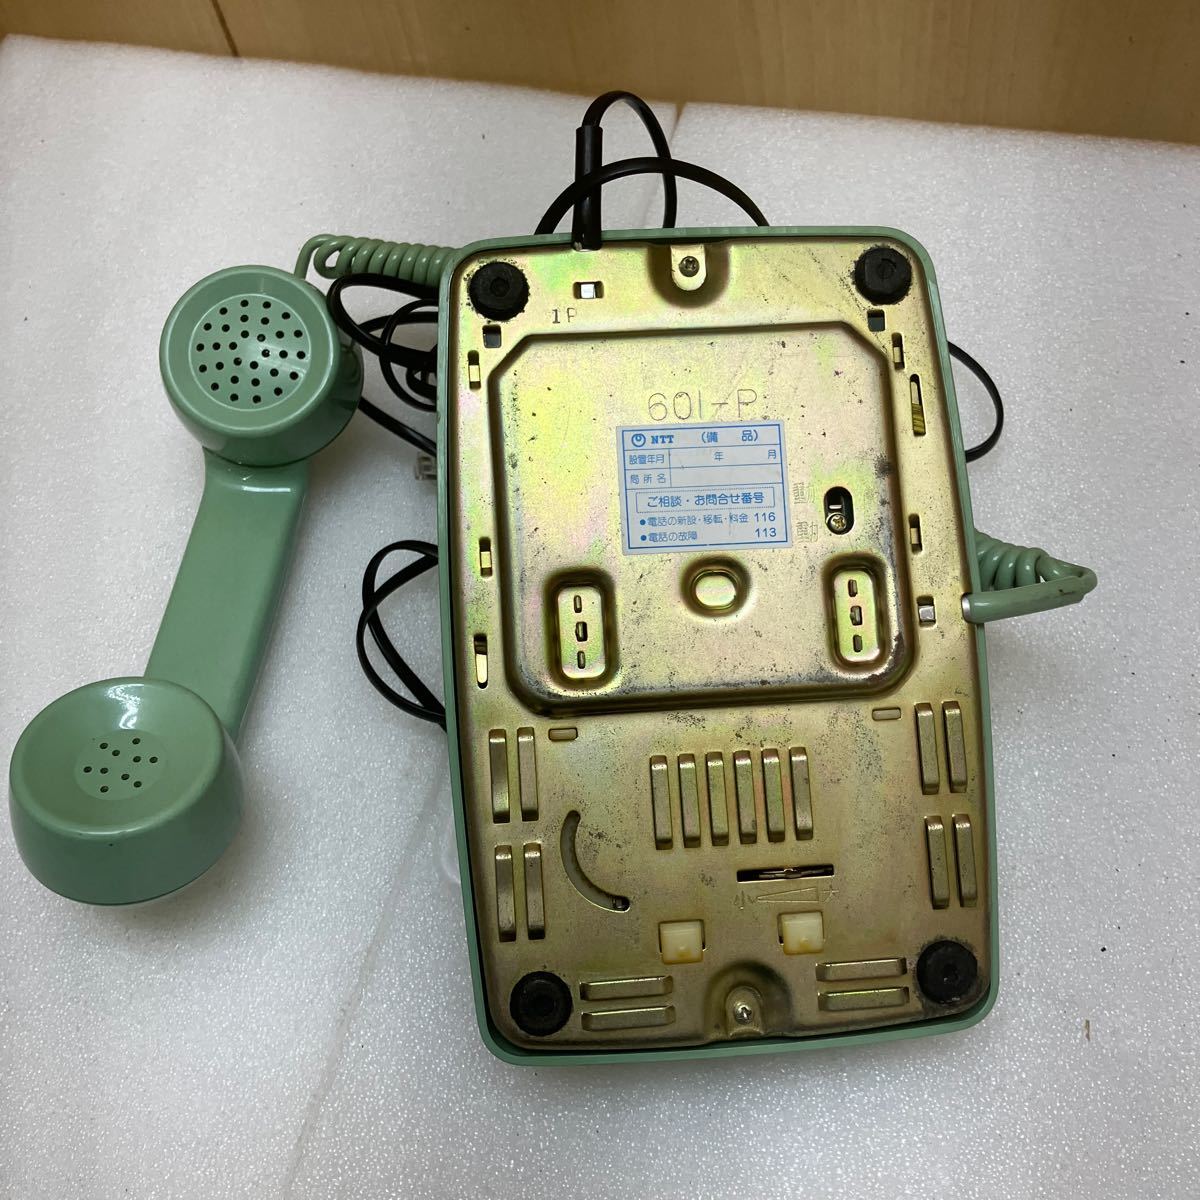 MK5444 telephone machine green retro.20240123